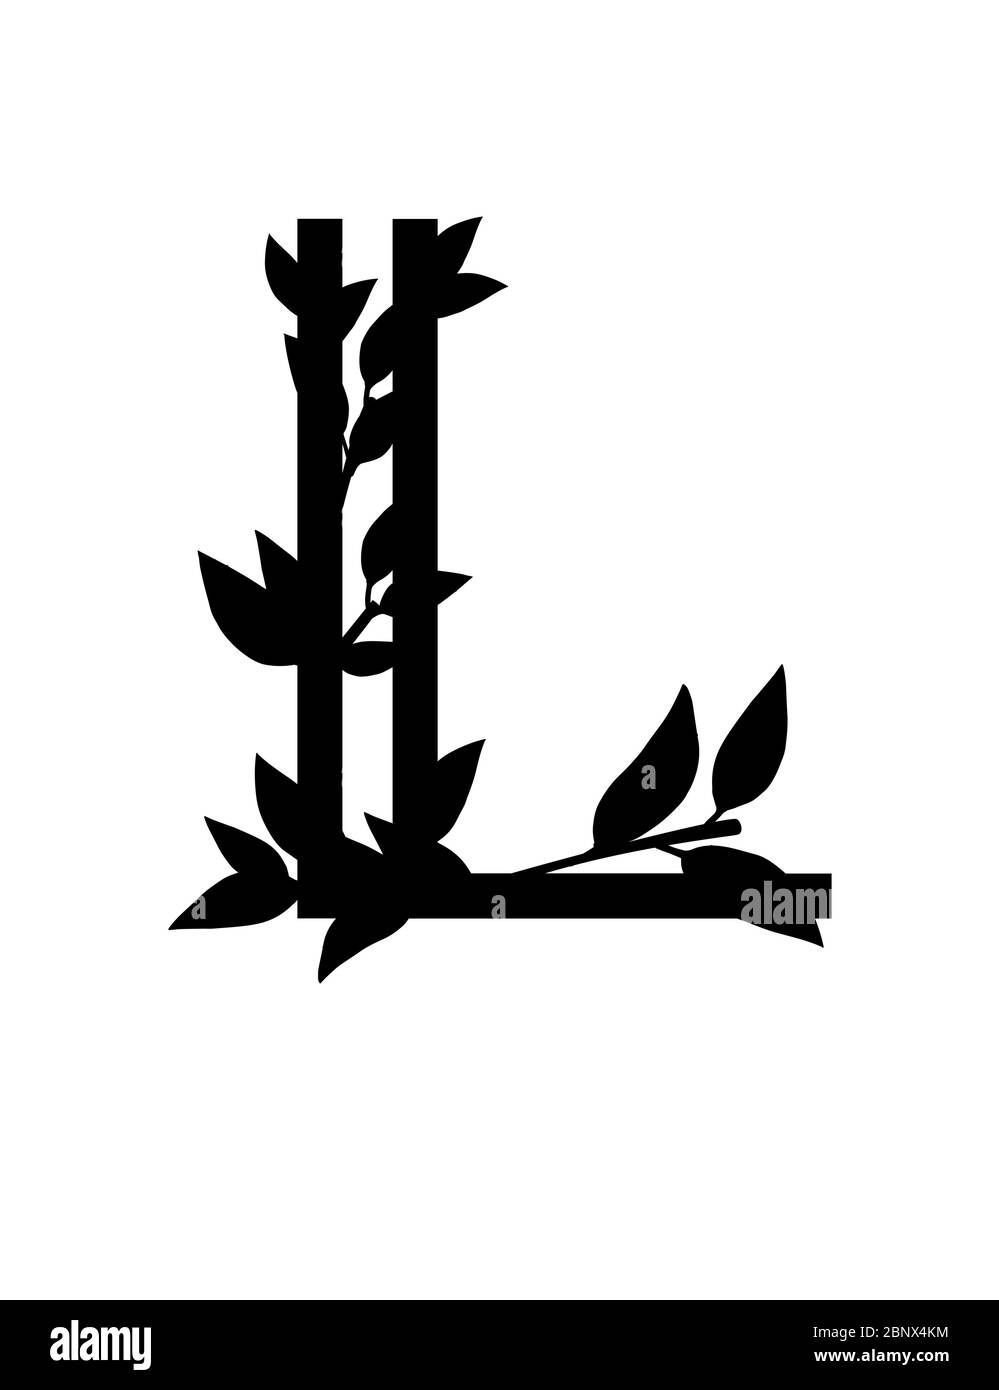 Silhouette noire lettre L avec feuilles couvertes police ECO plate illustration vectorielle isolée sur fond blanc Illustration de Vecteur